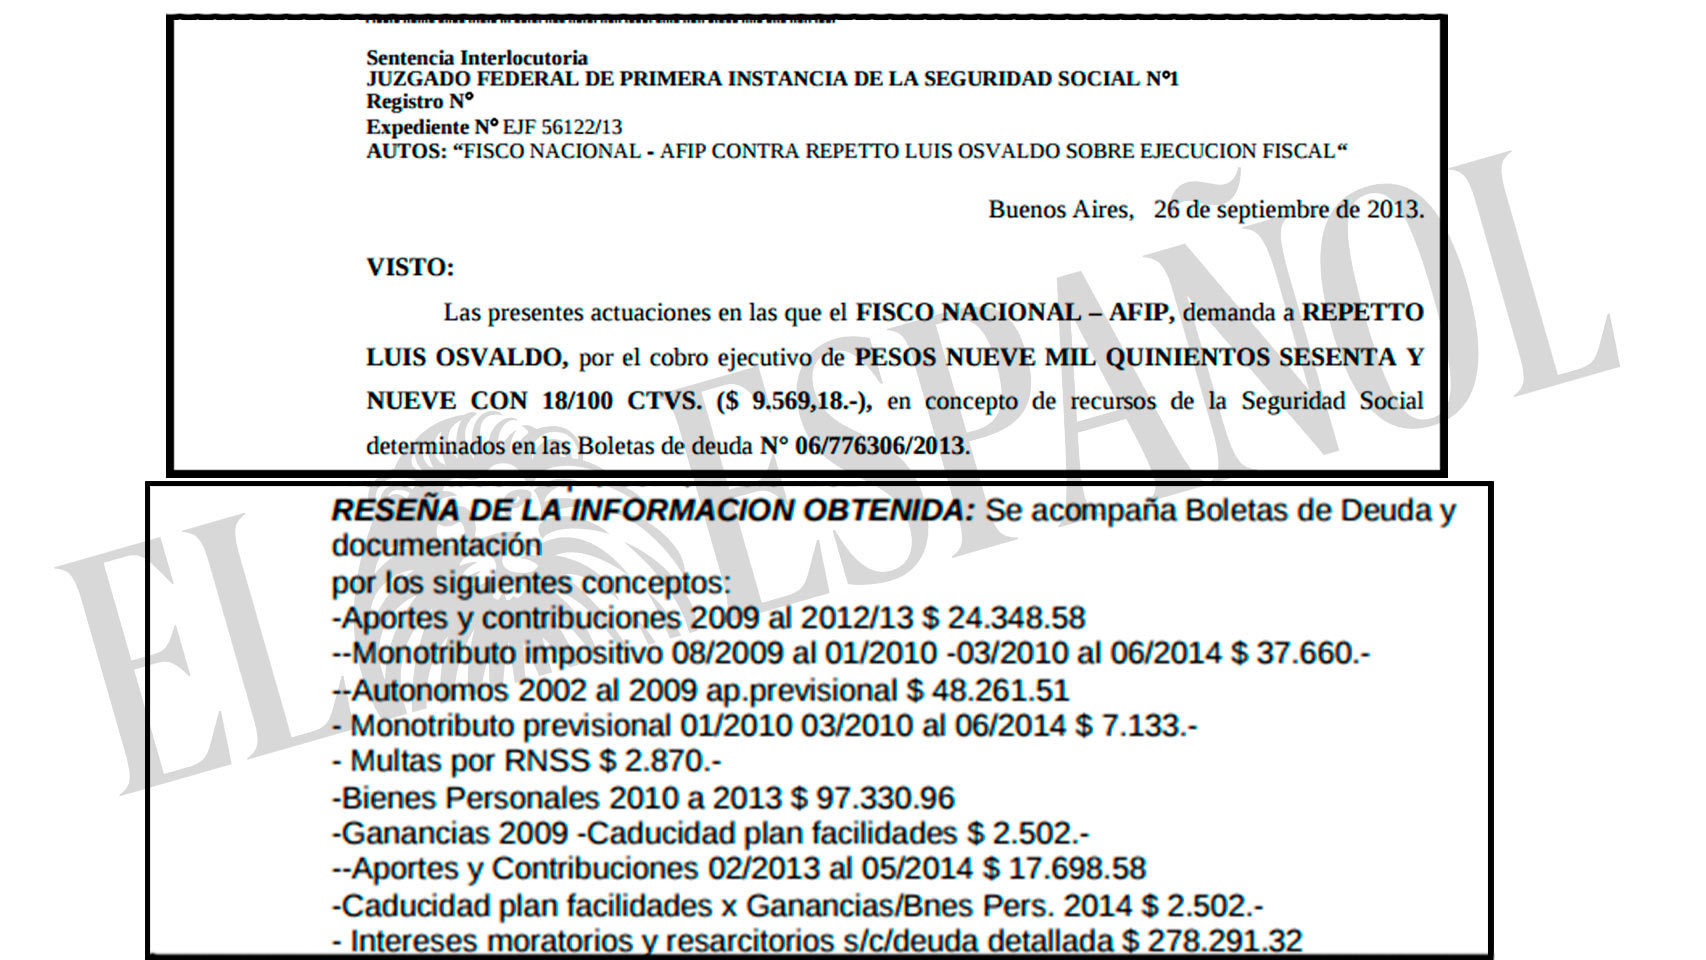 Extractos sobre las reclamaciones de deuda del fisco argentino.